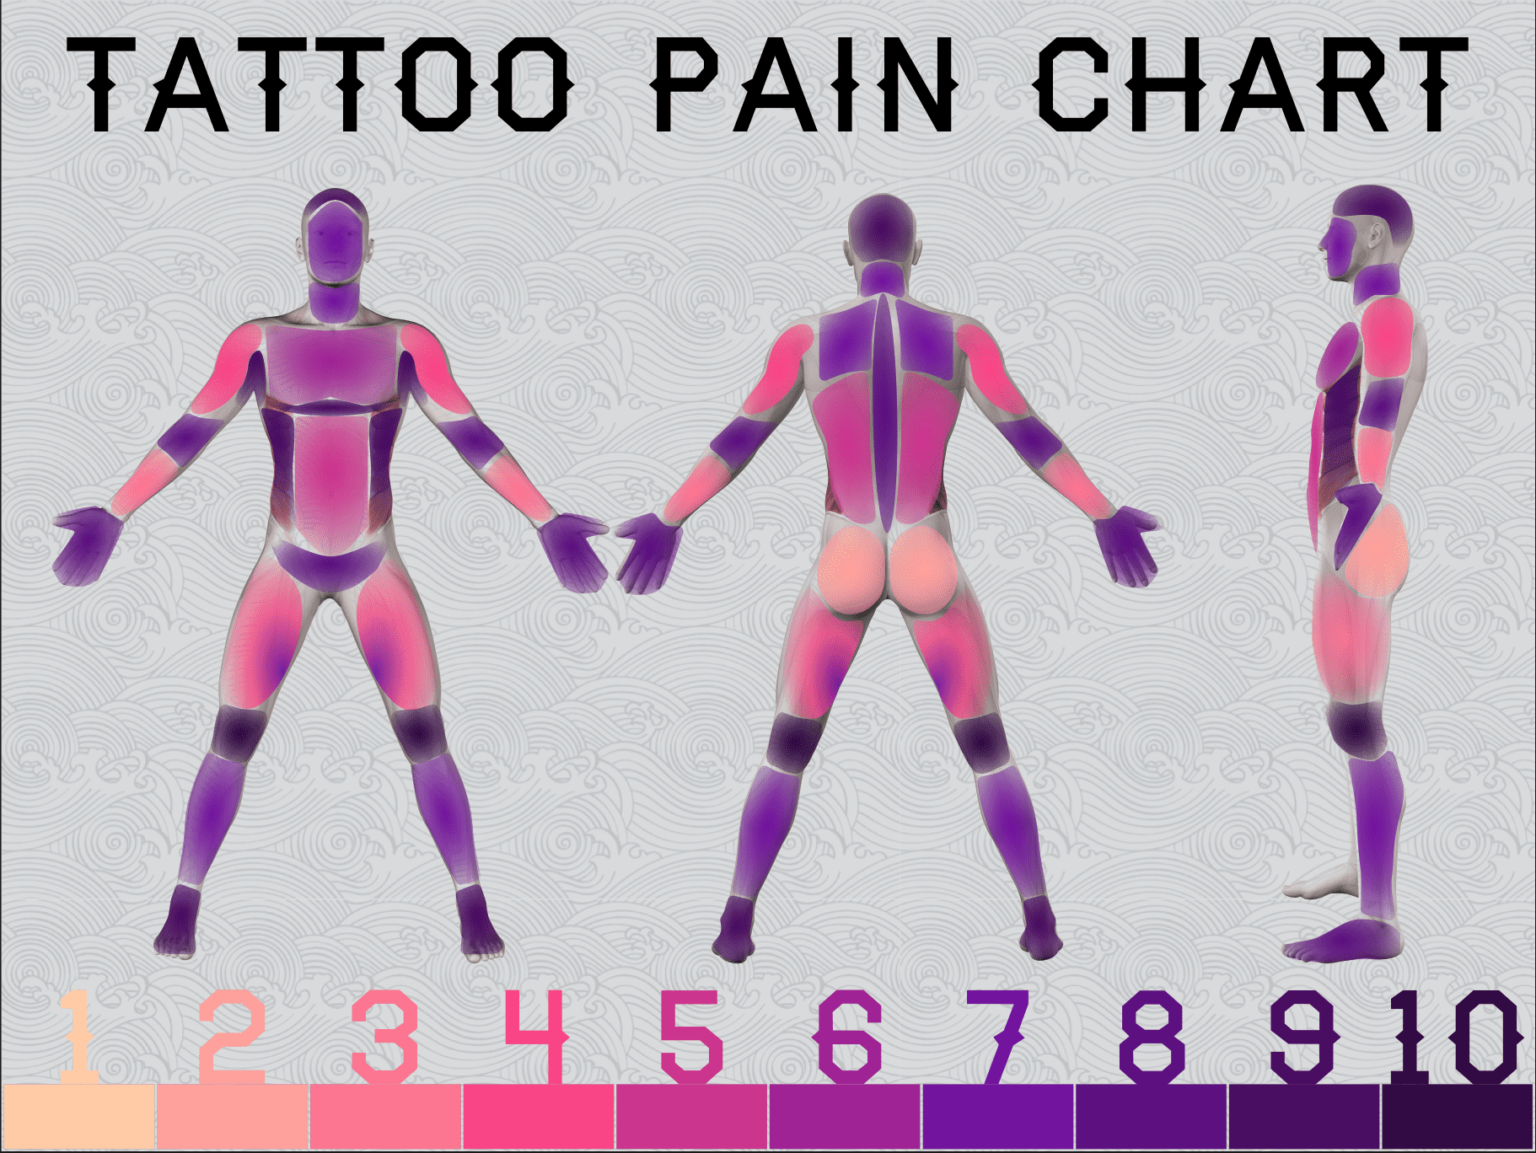 Inner Hand Tattoo Pain - wide 4